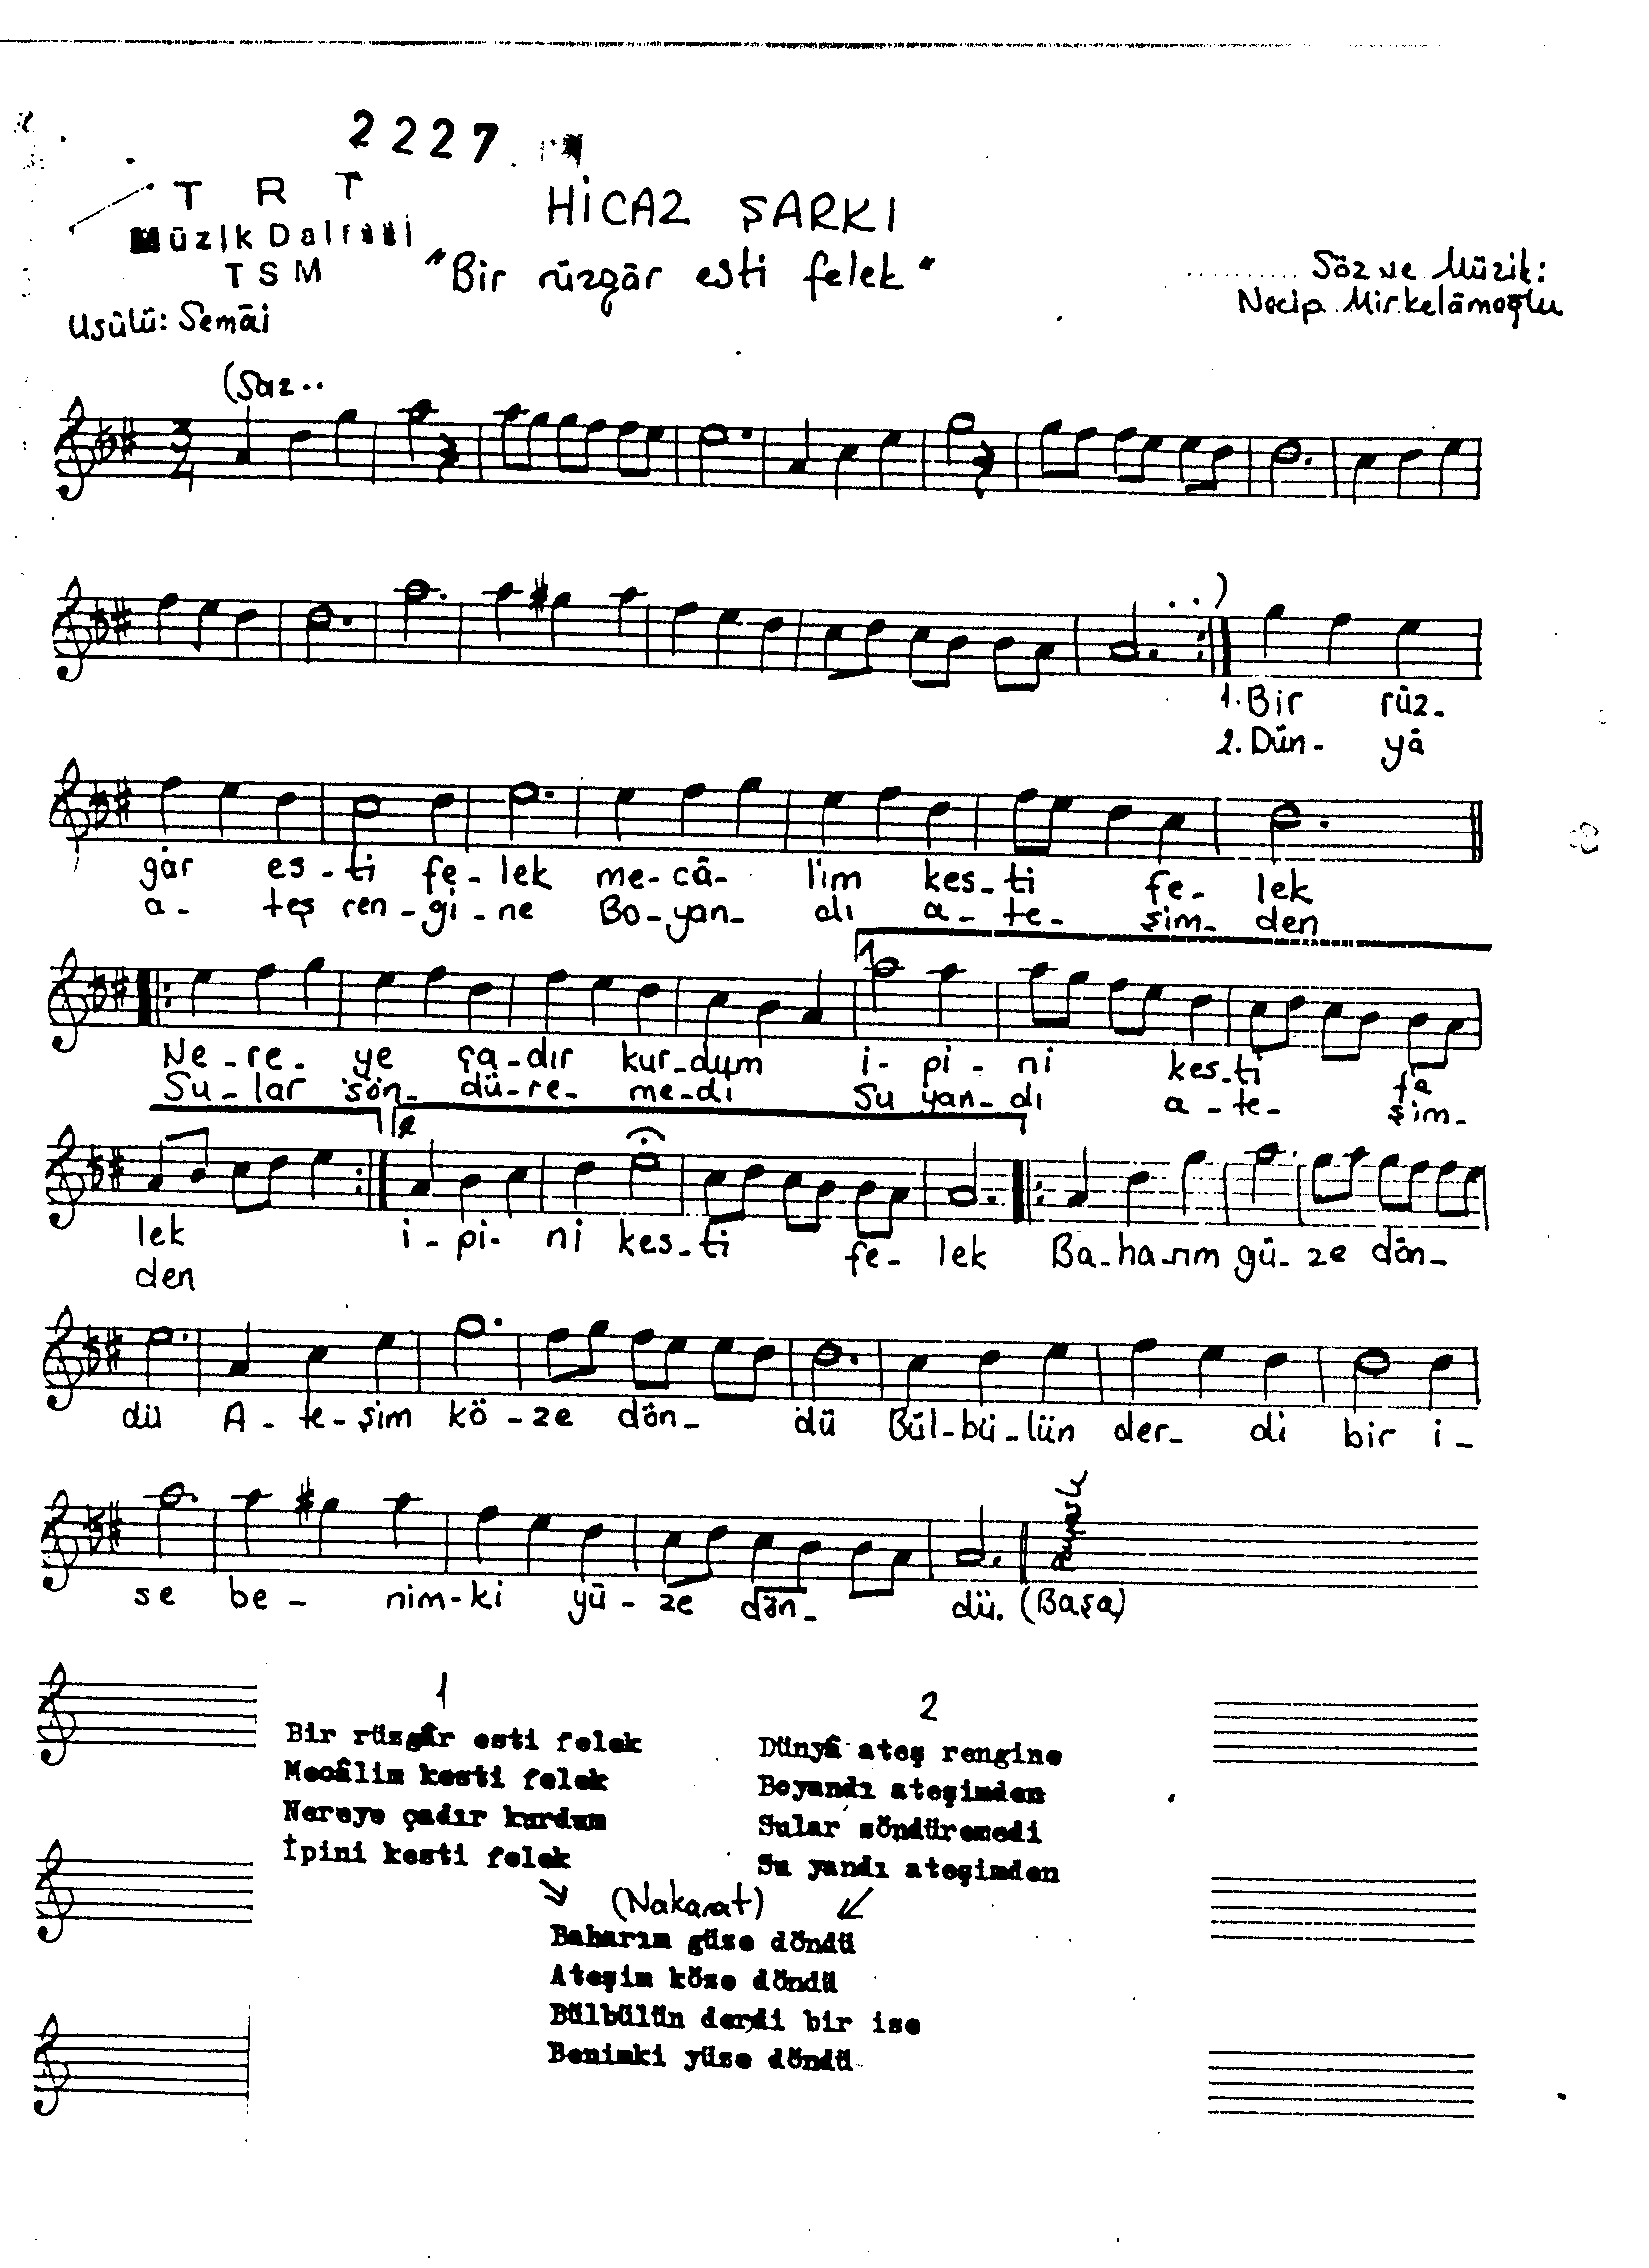 Hicâz - Şarkı - Necip Mirkelâmoğlu - Sayfa 1